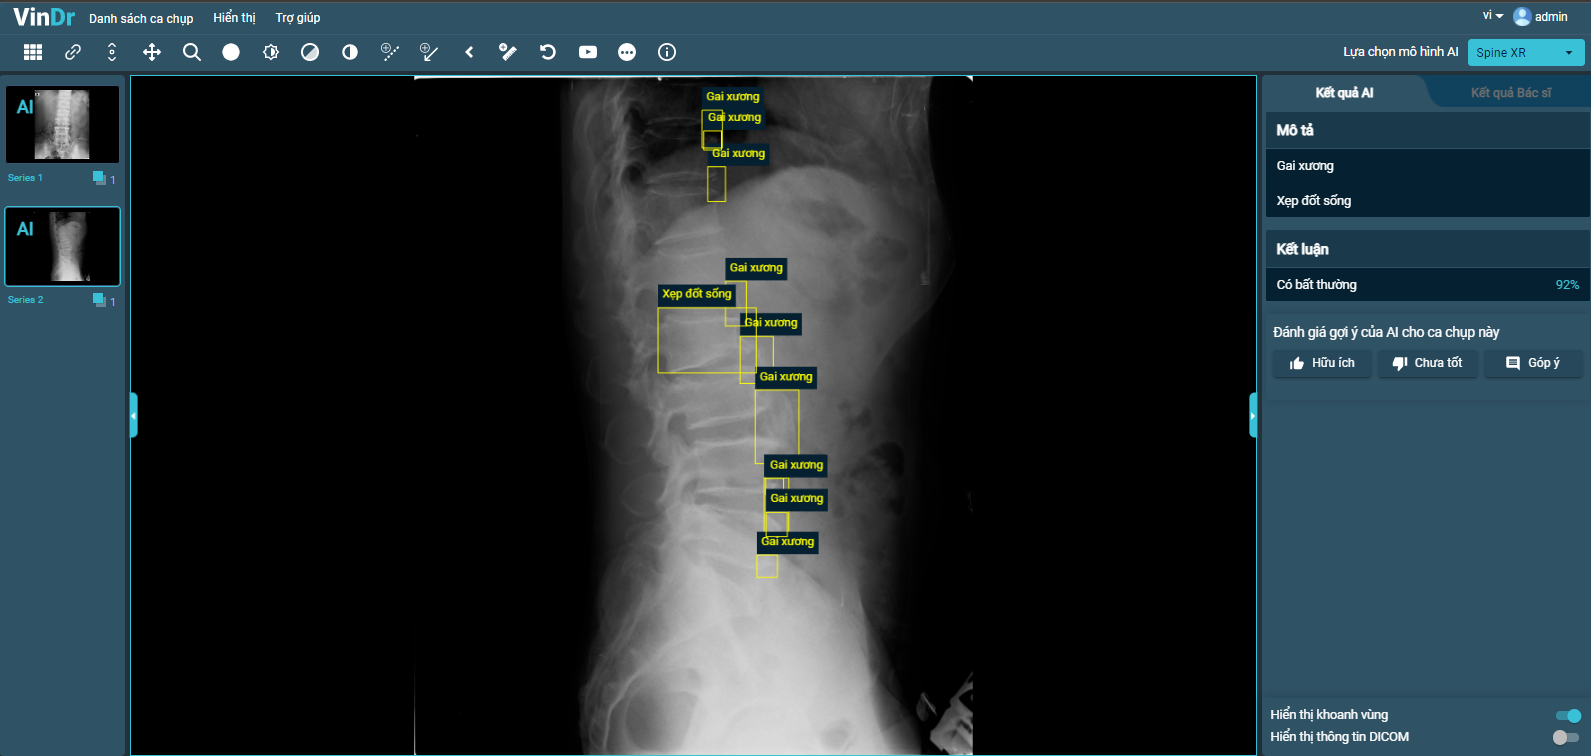 VinDr hoàn thiện tính năng mới SpineXR, hỗ trợ chẩn đoán ảnh X-quang cột sống với độ chính xác khoảng 90%.